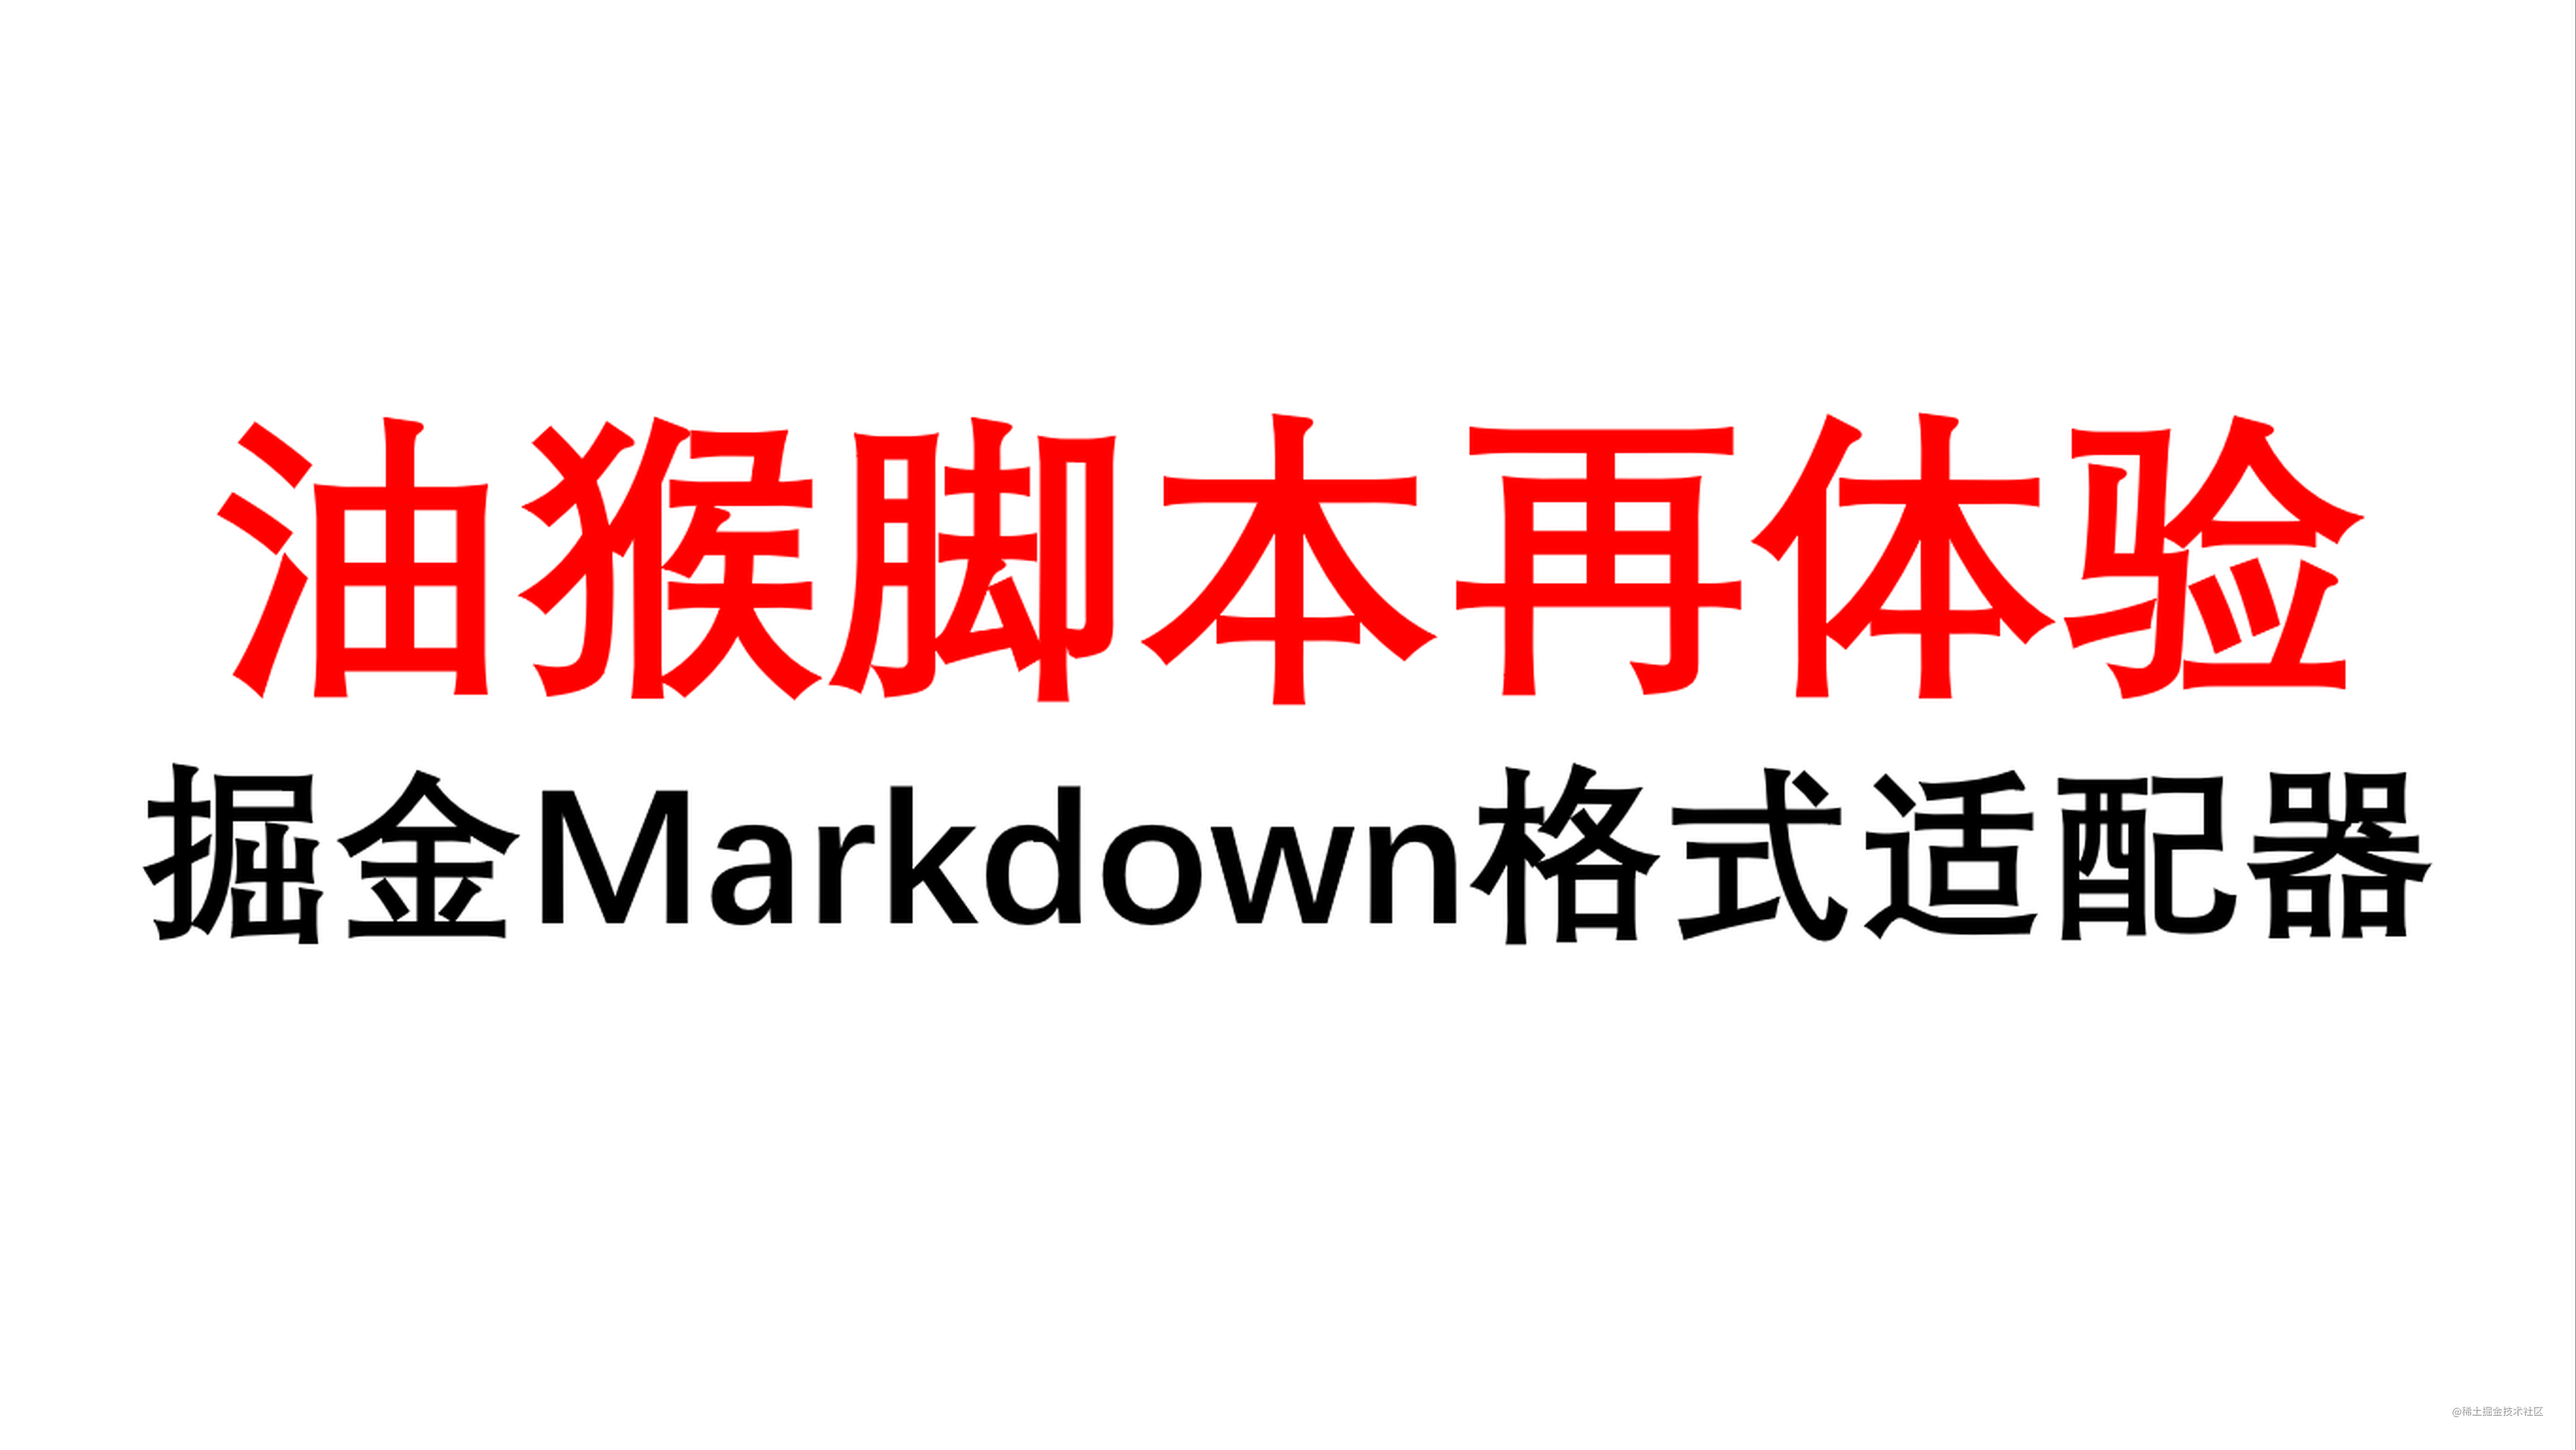 掘金Markdown编辑器问题描述